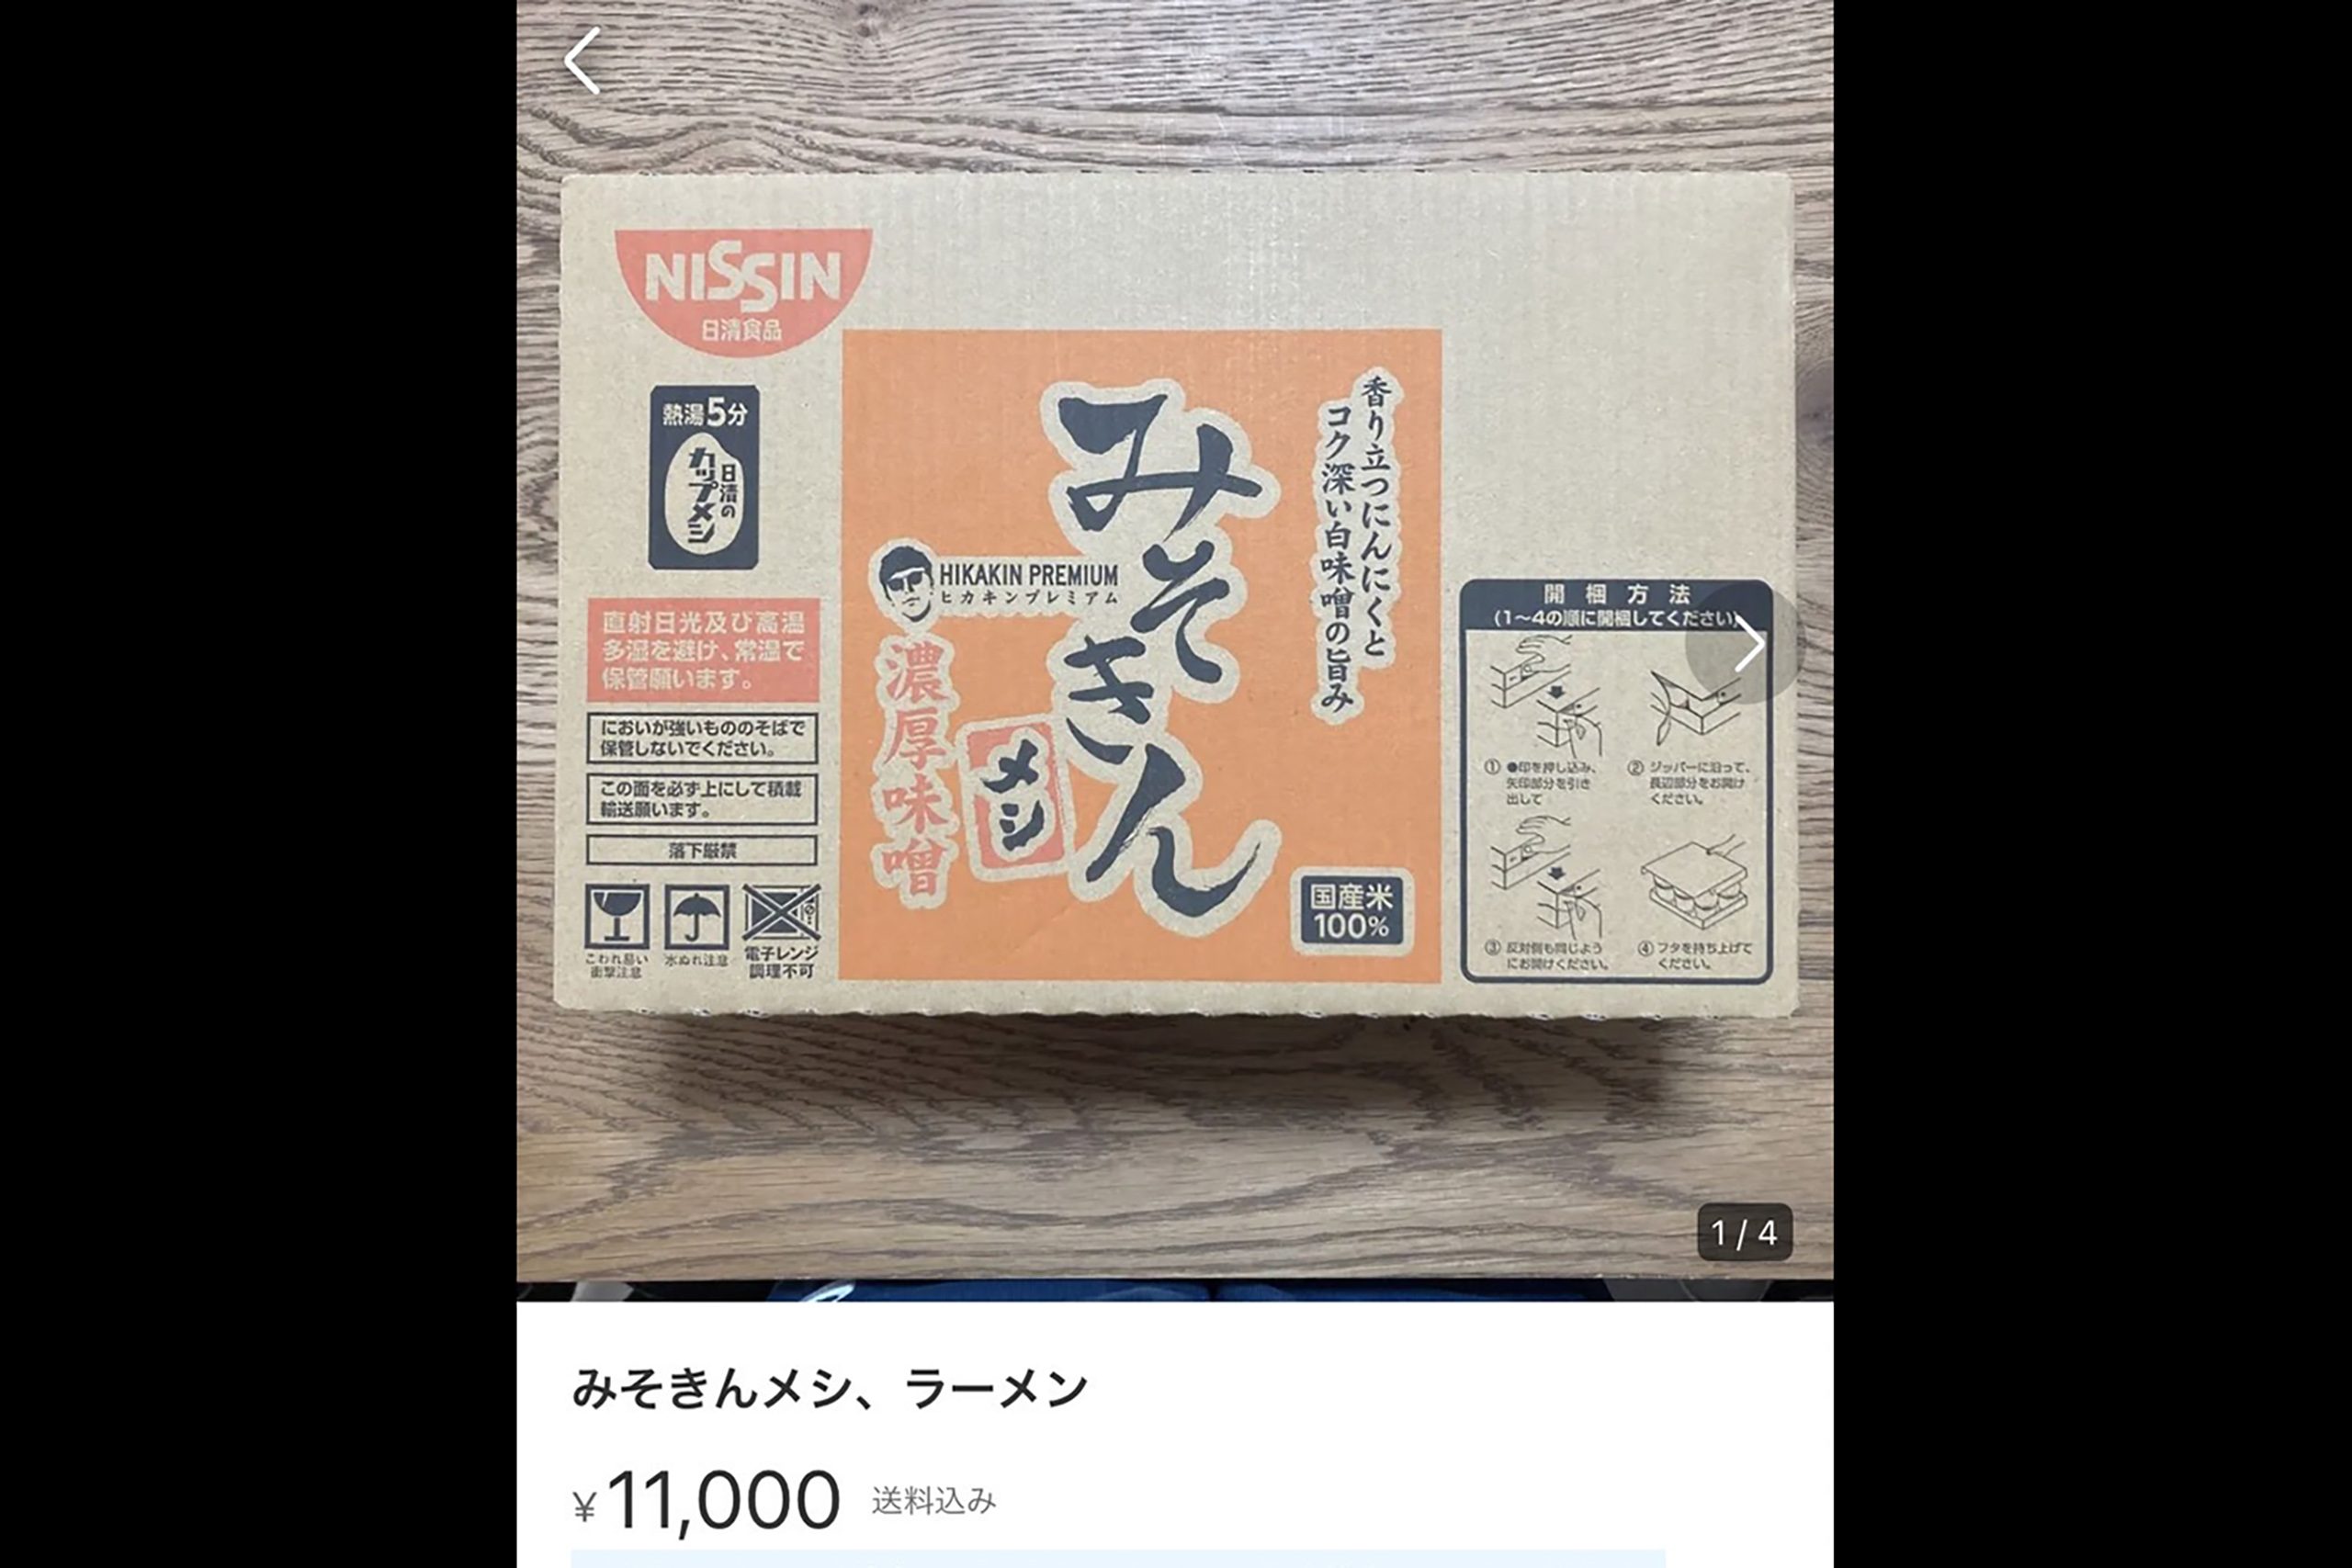 ヒカキン、念願のラーメン『みそきん』が転売被害に… 1万円超えの出品